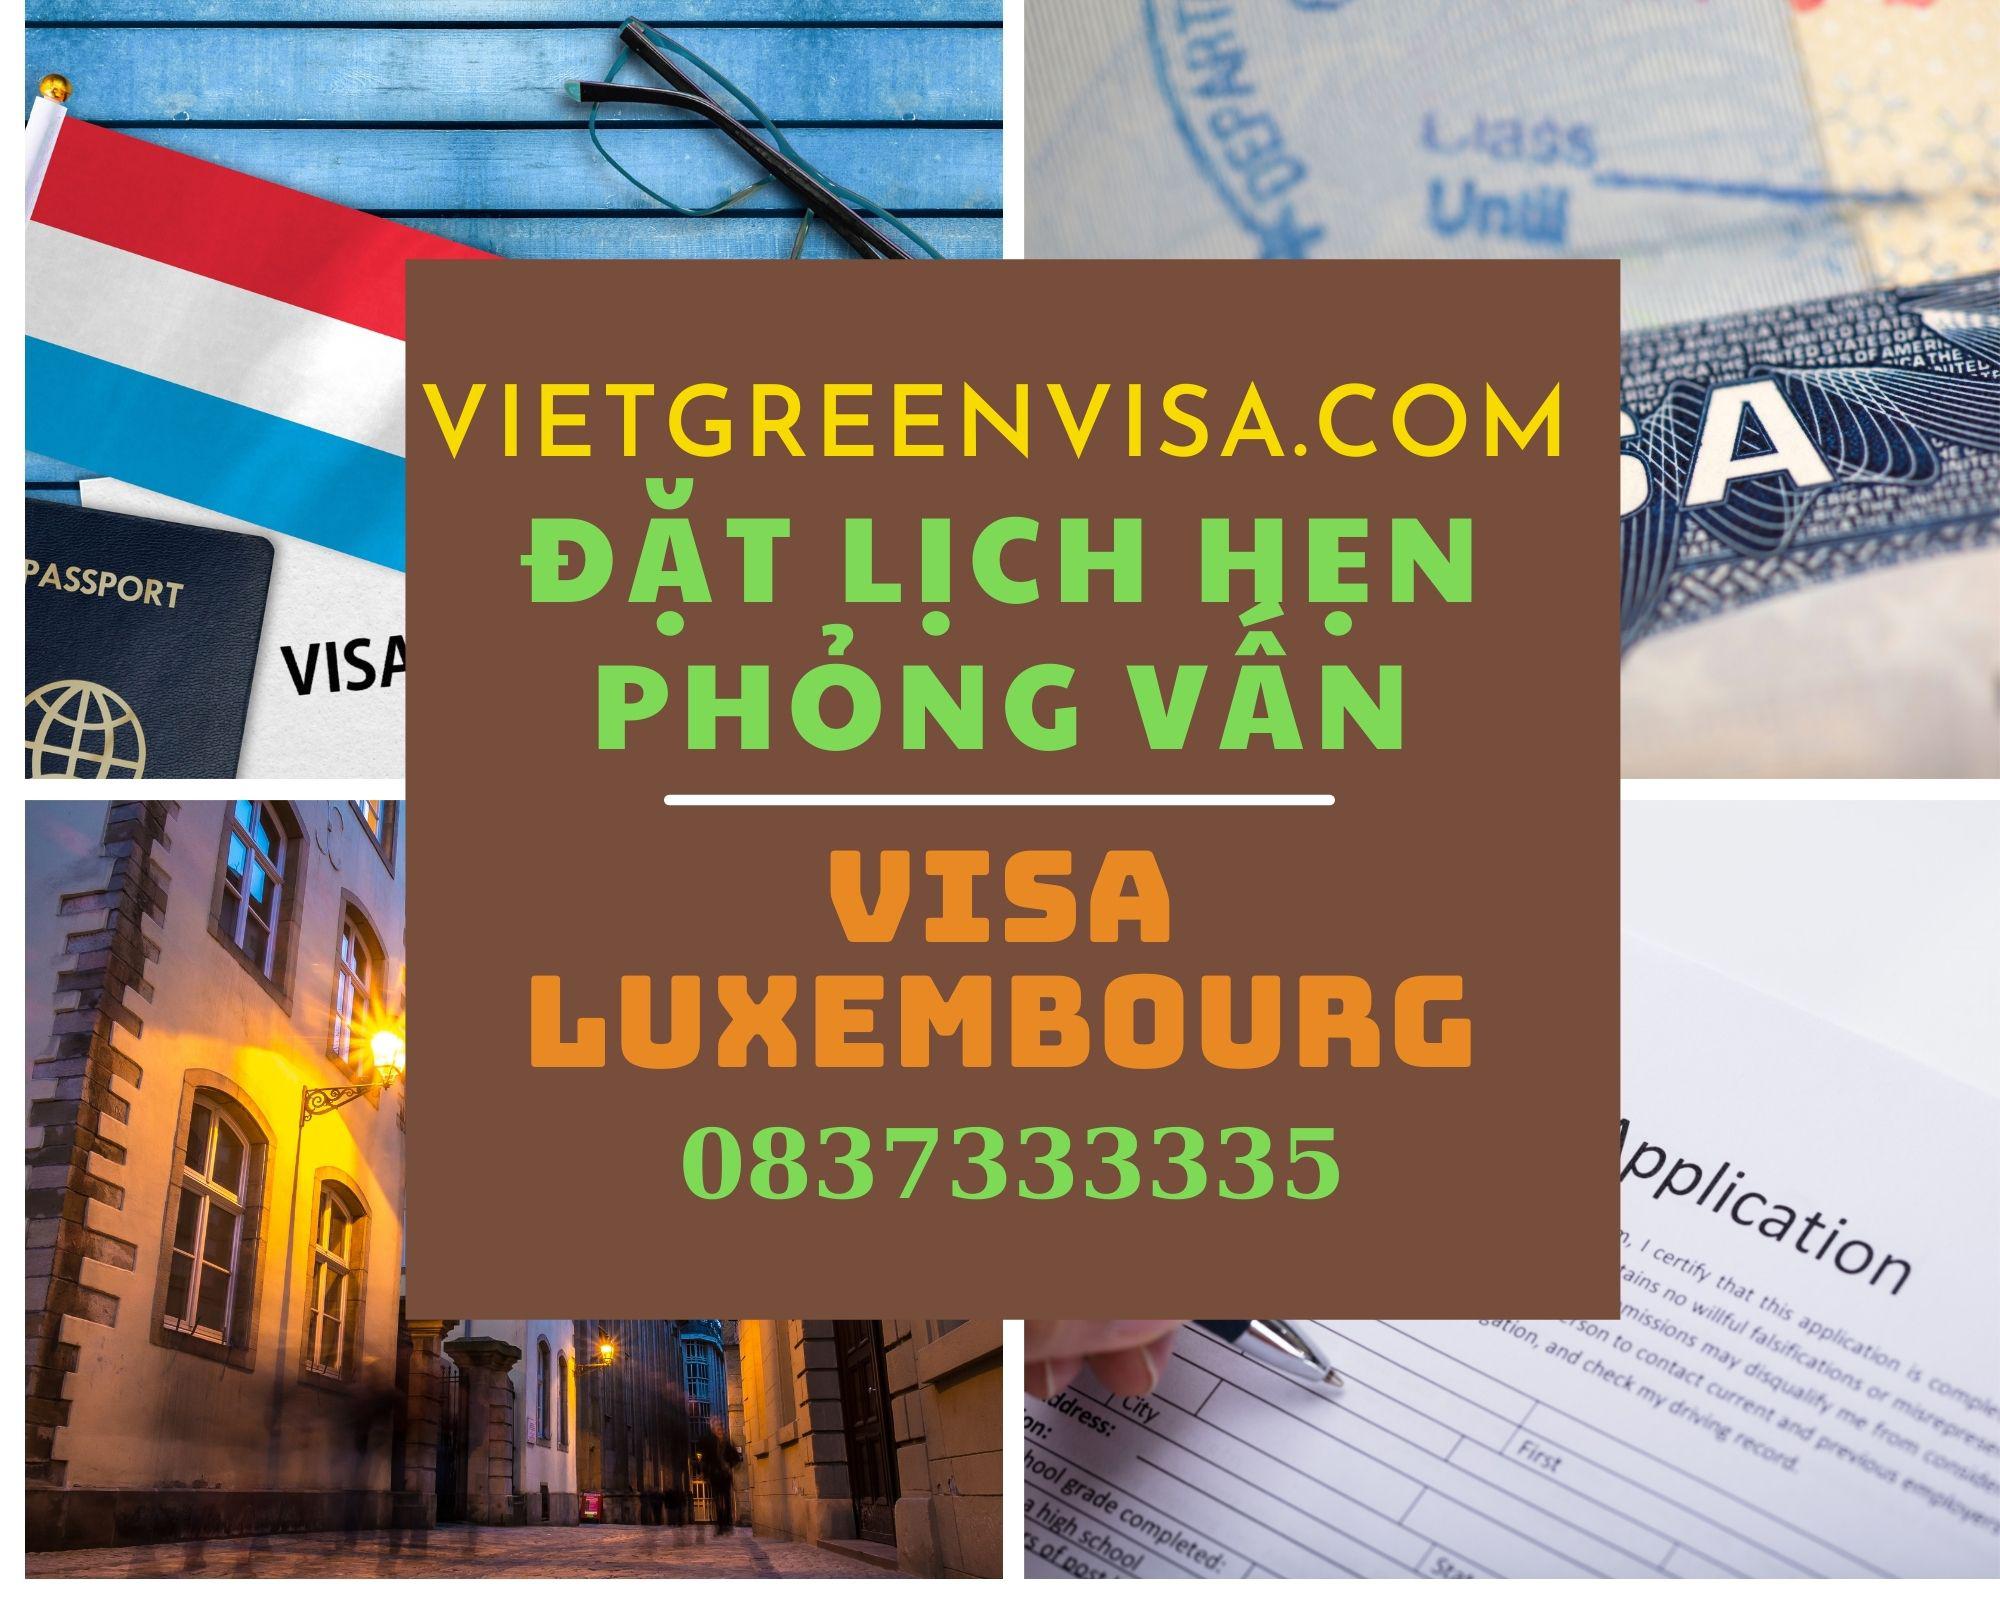 Hướng dẫn đặt lịch hẹn phỏng visa visa Luxembourg